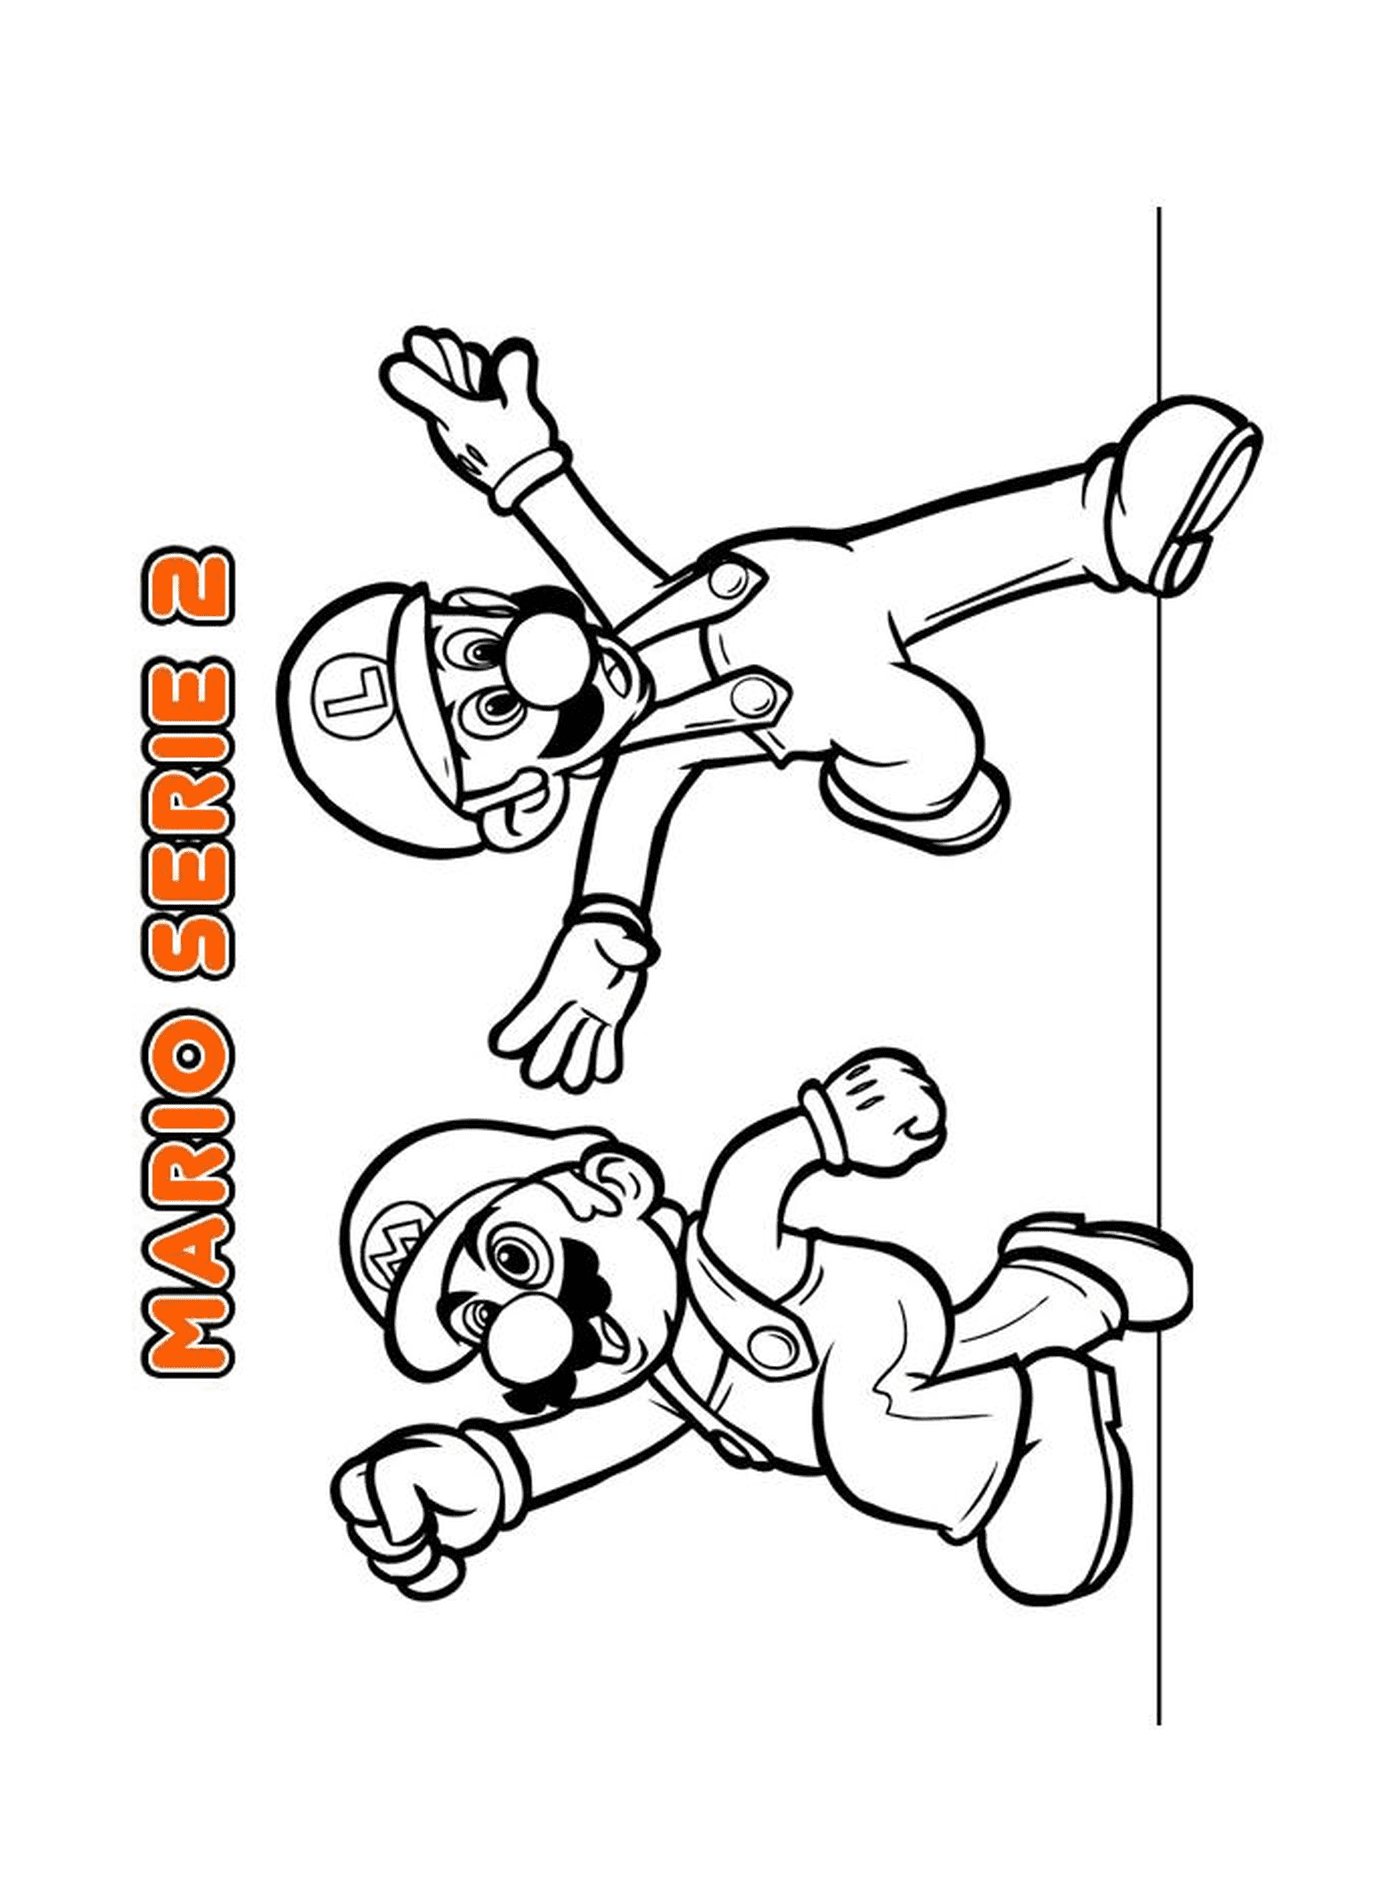  मारियो Bros Ninendडो 4, दो कार्टून अक्षर 